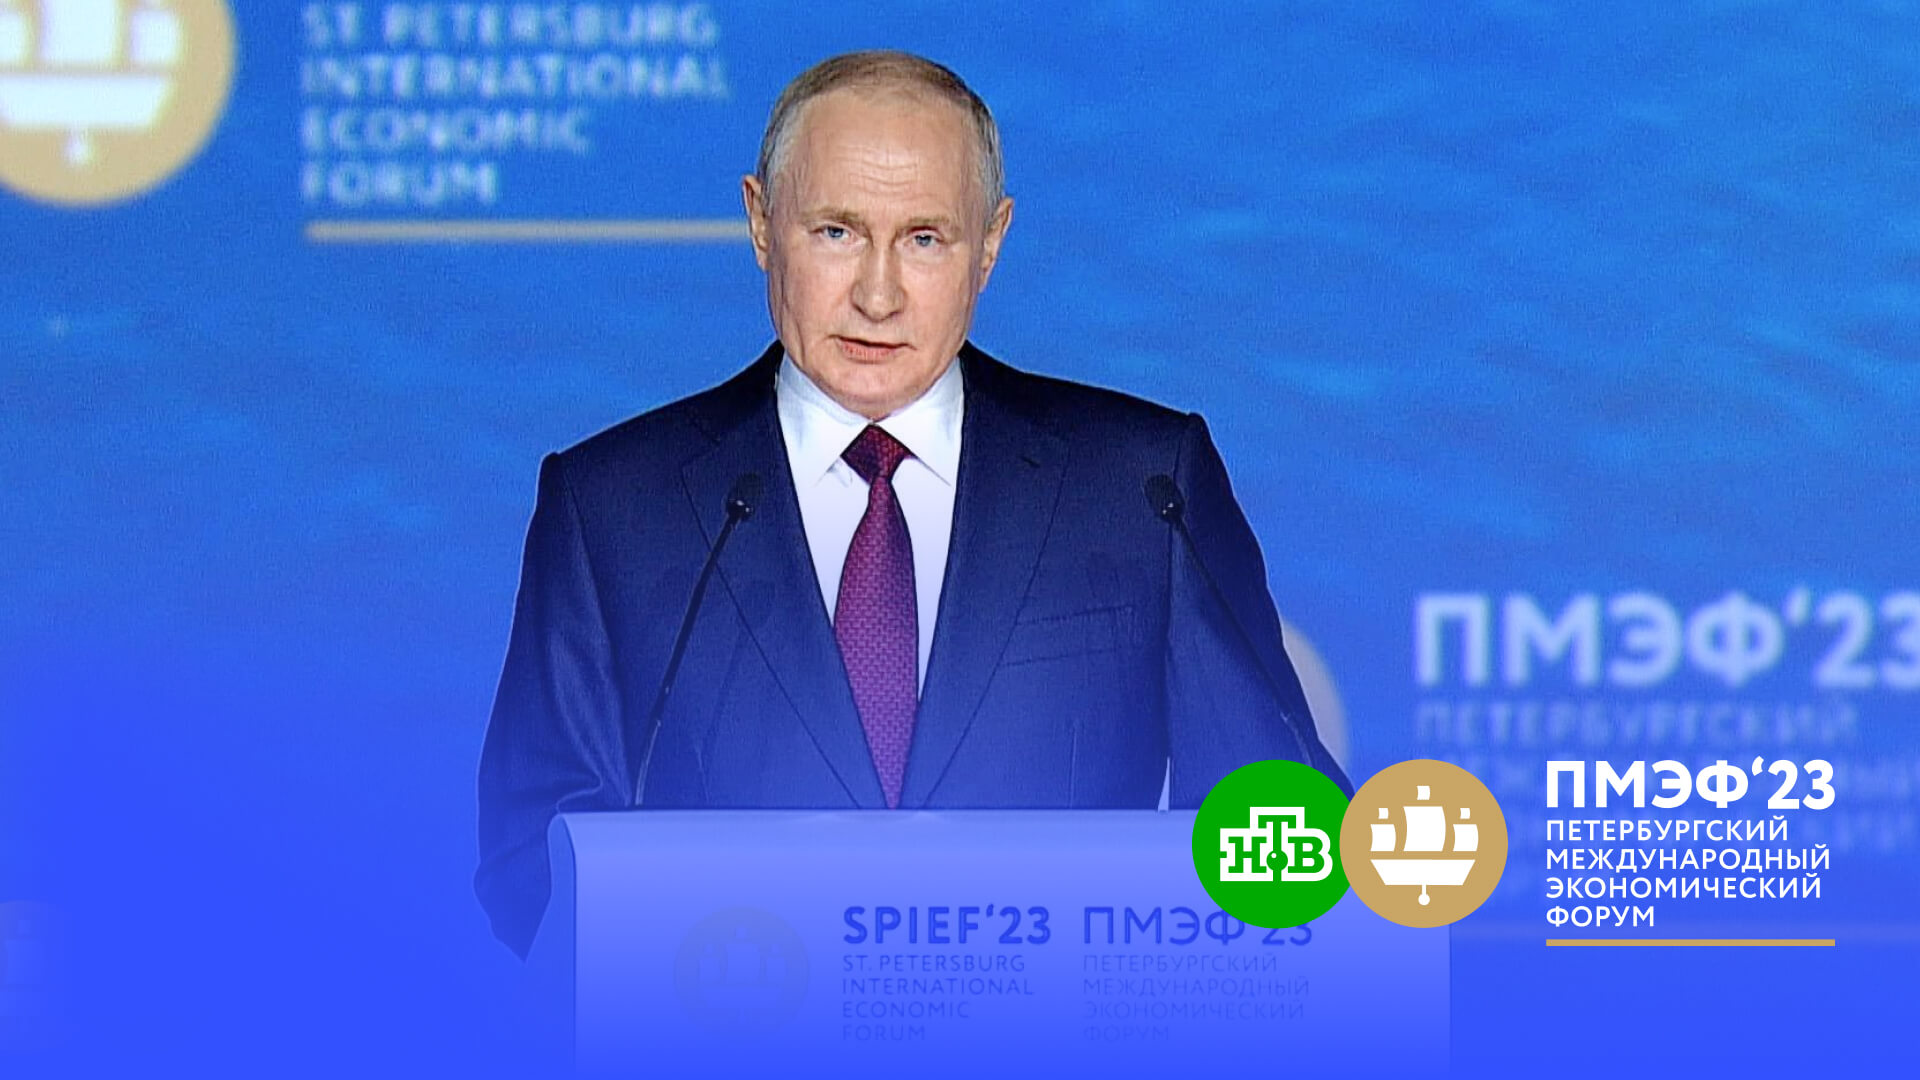 Путин: финансовые возможности позволяют РФ держать курс на снижение бедности